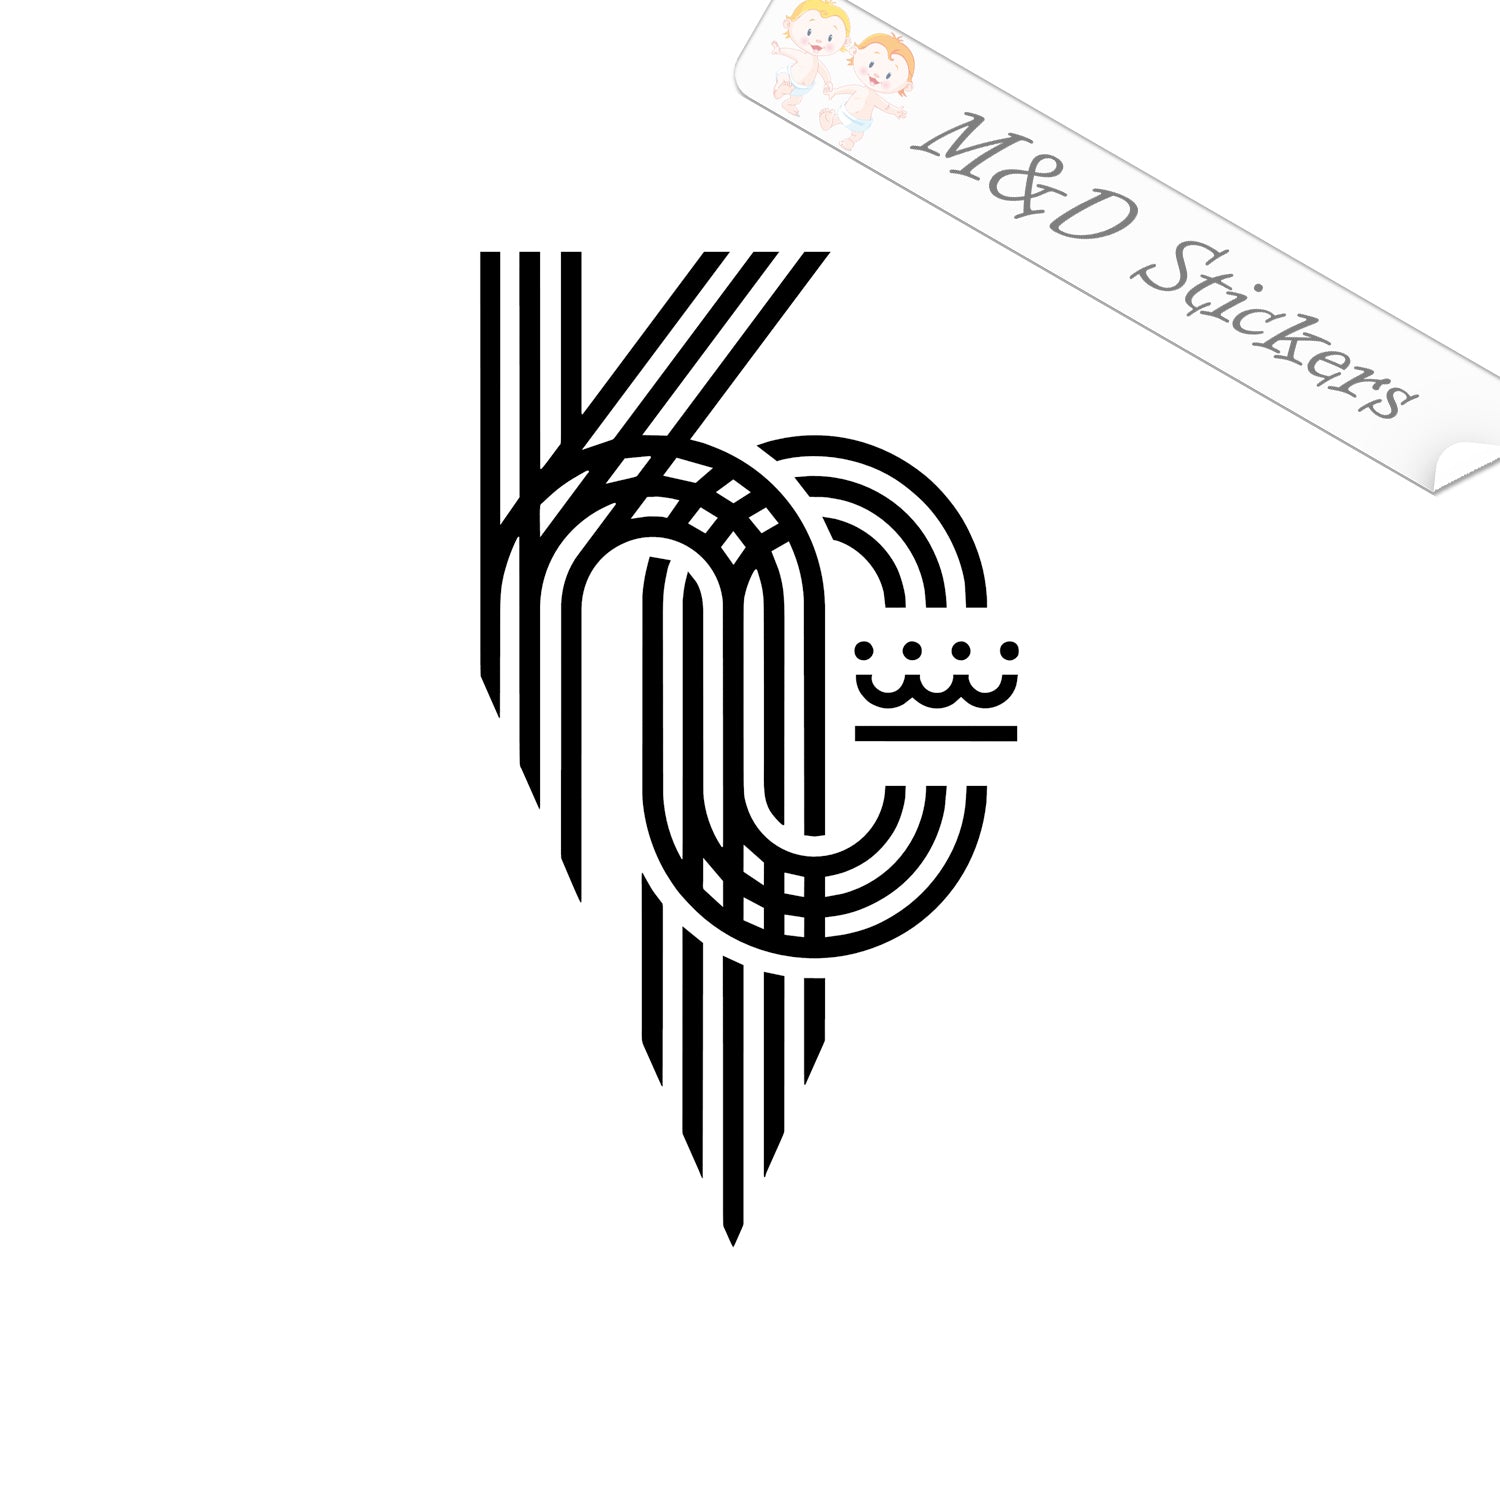 kc royals logo